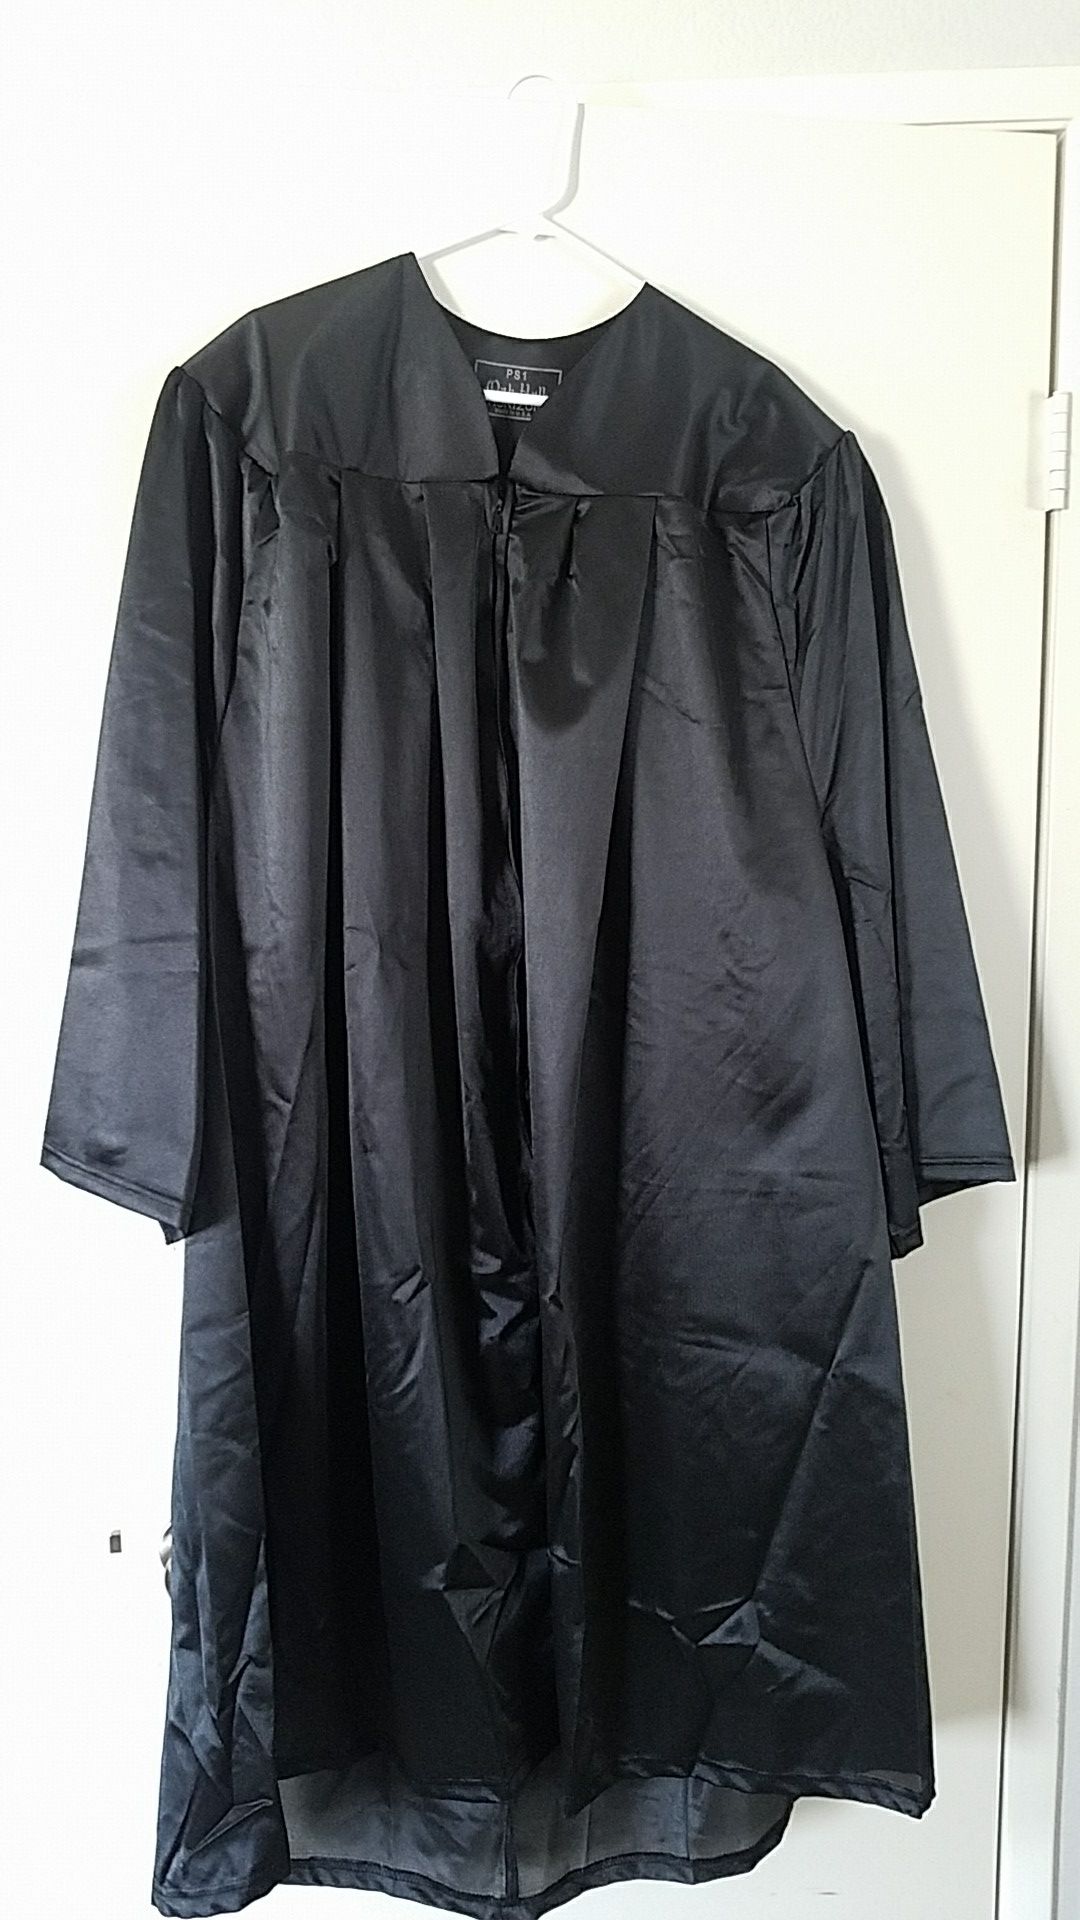 Graduation gown plus size